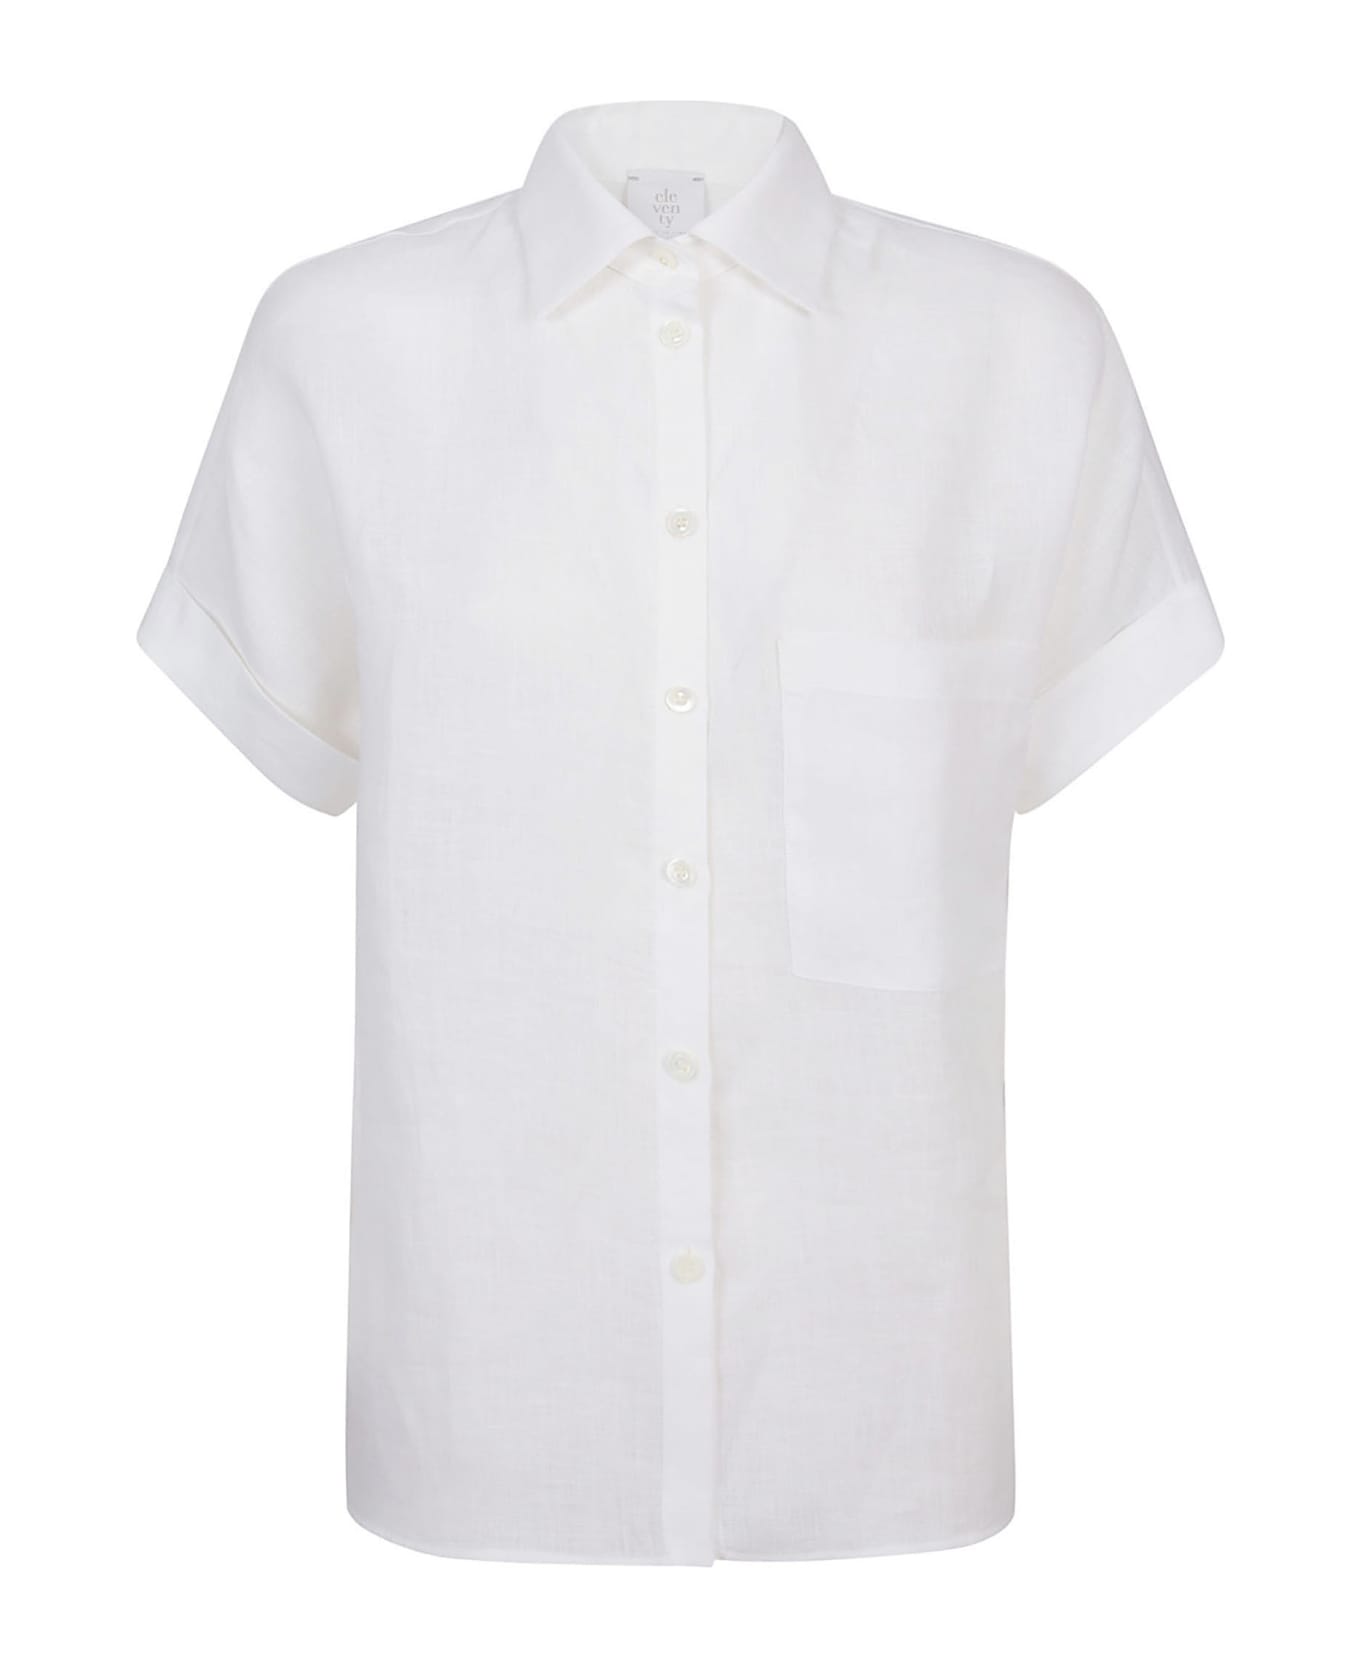 Eleventy Shirts White - White シャツ